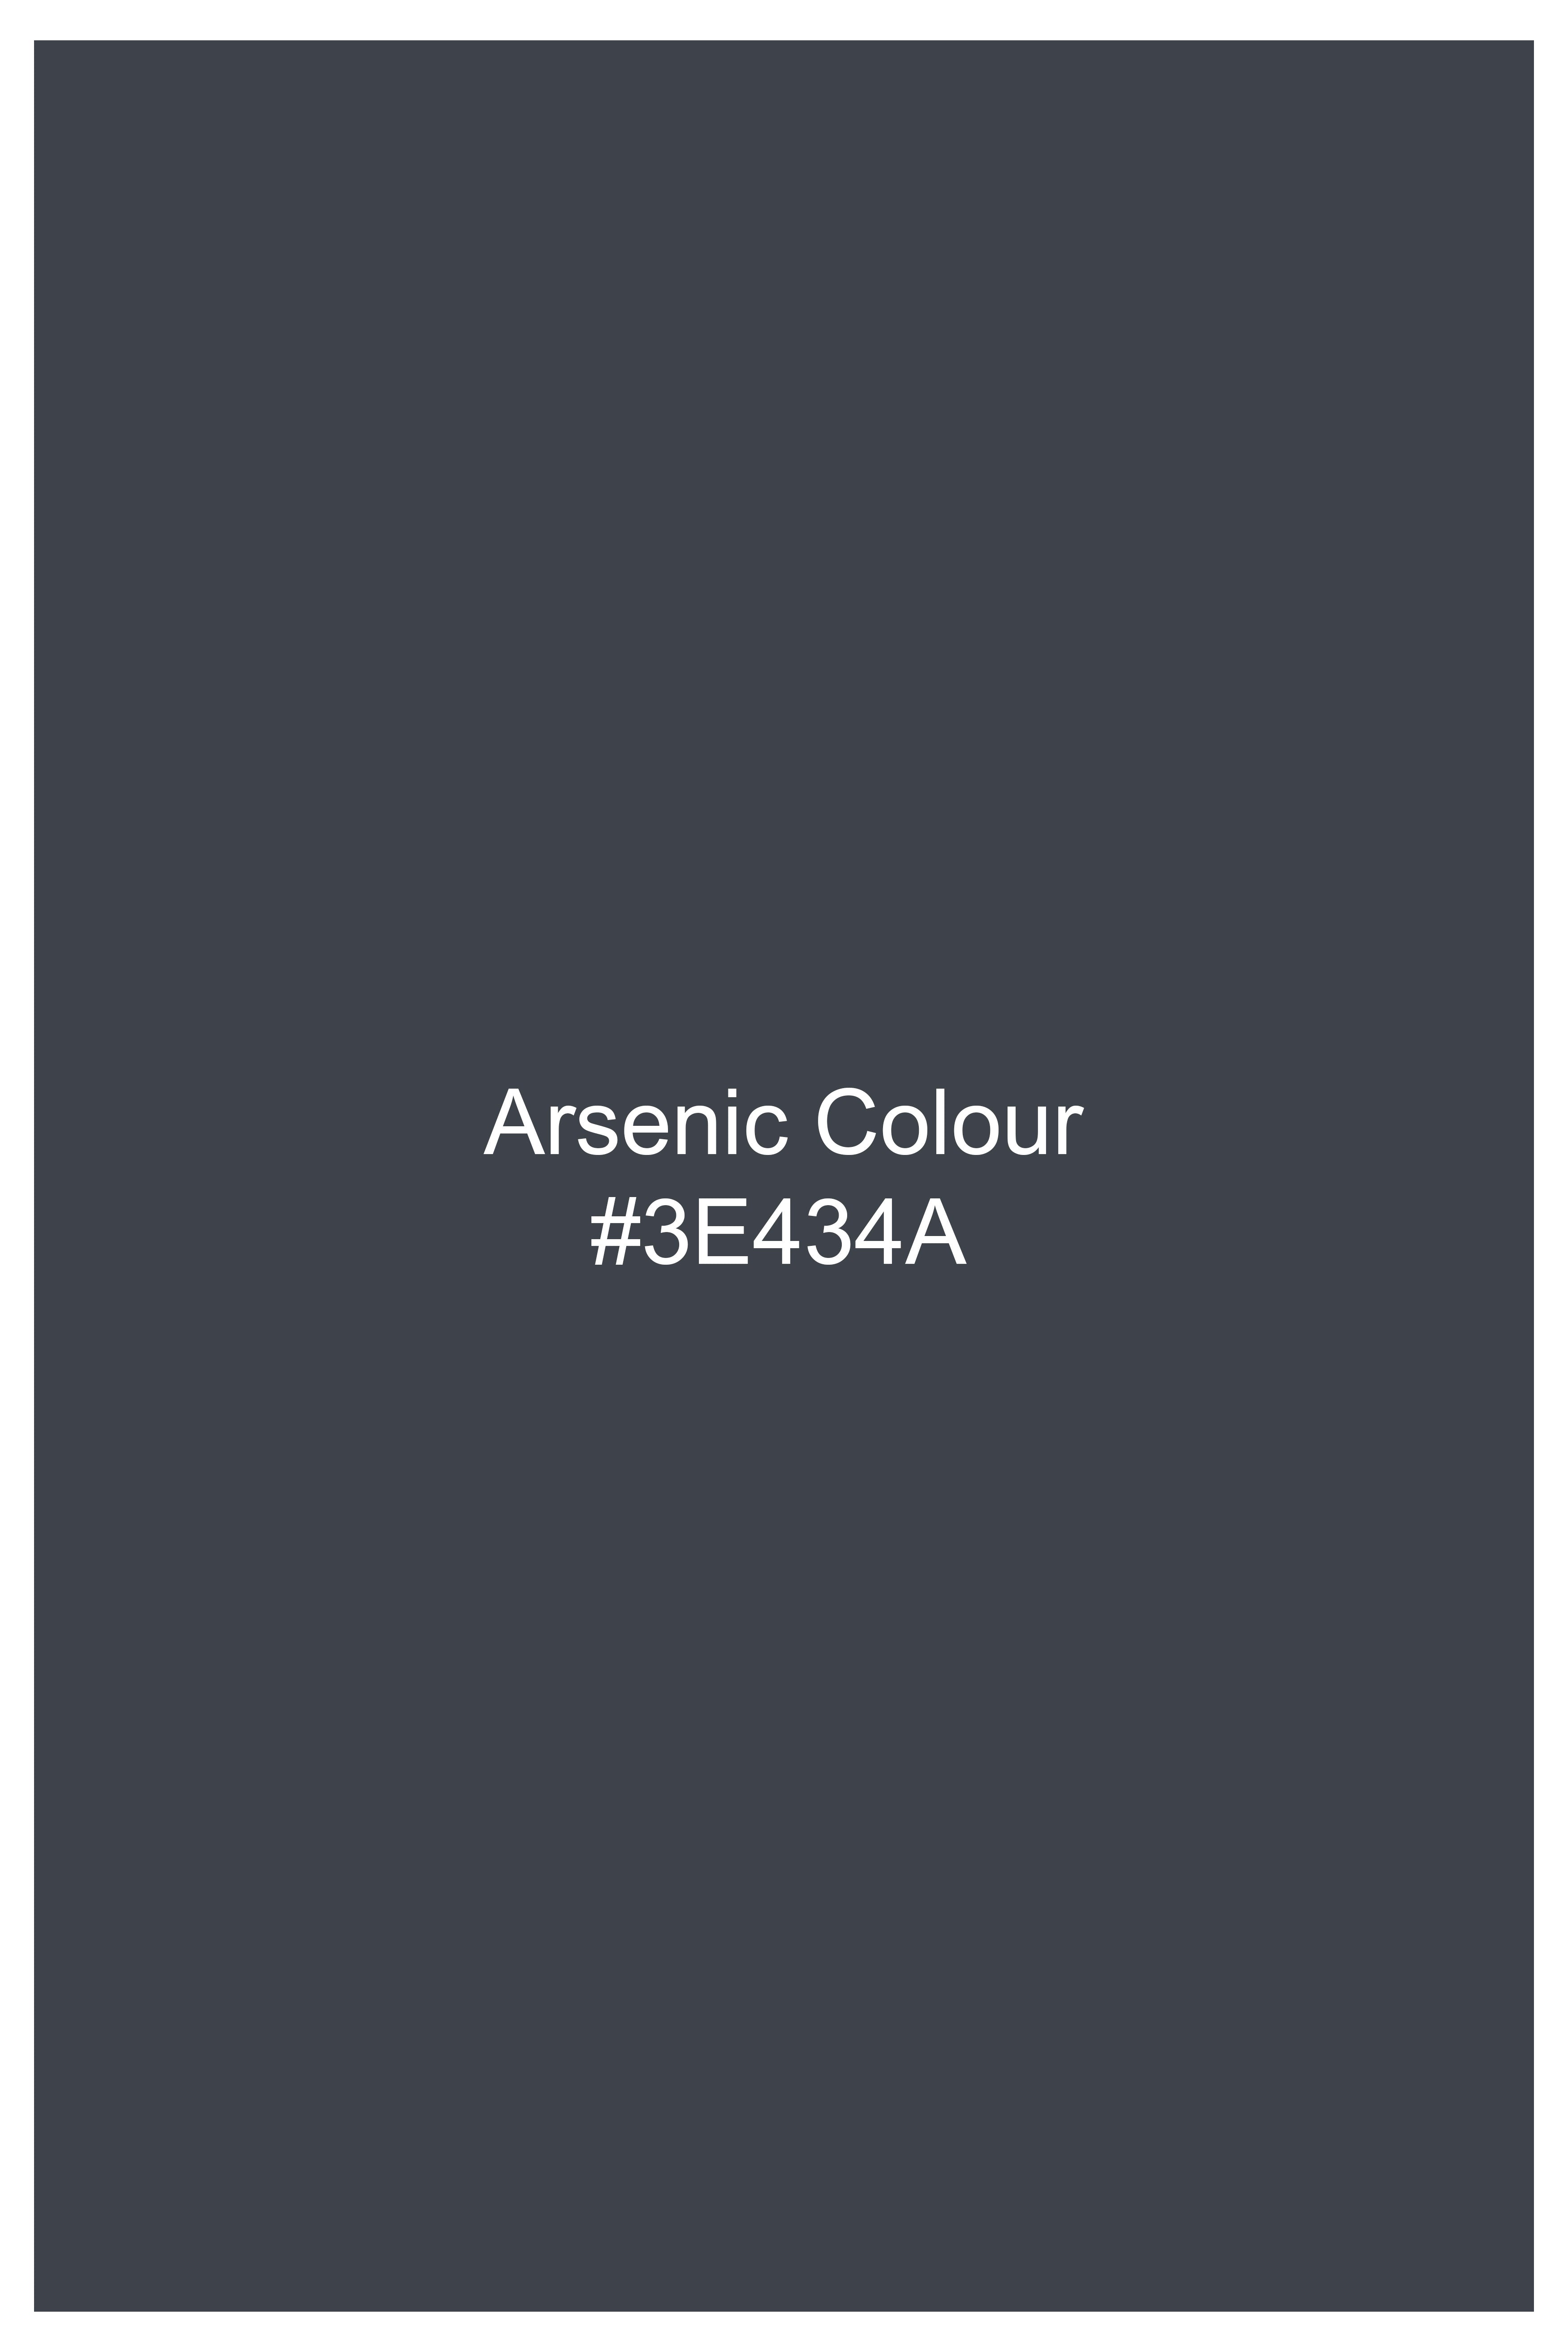 Arsenic Gray Luxurious Linen Waistcoat V2922-36, V2922-38, V2922-40, V2922-42, V2922-44, V2922-46, V2922-48, V2922-50, V2922-22, V2922-54, V2922-56, V2922-58, V2922-60